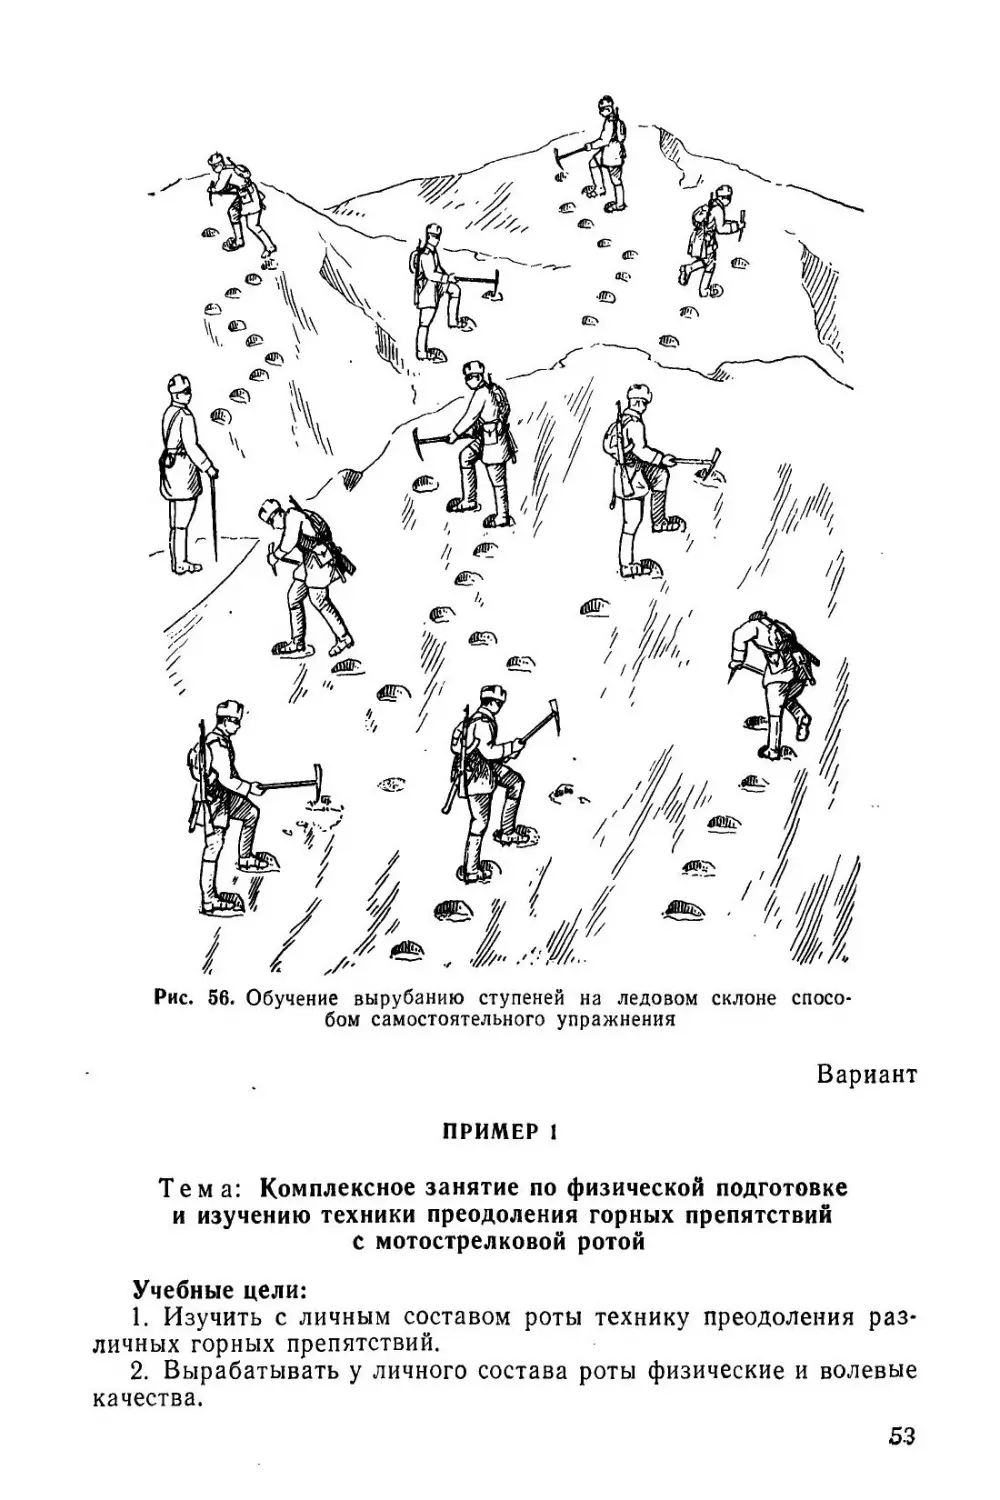 Методическое пособие Обучение мотострелковых подразделений боевым действиям в горах (1979)_54